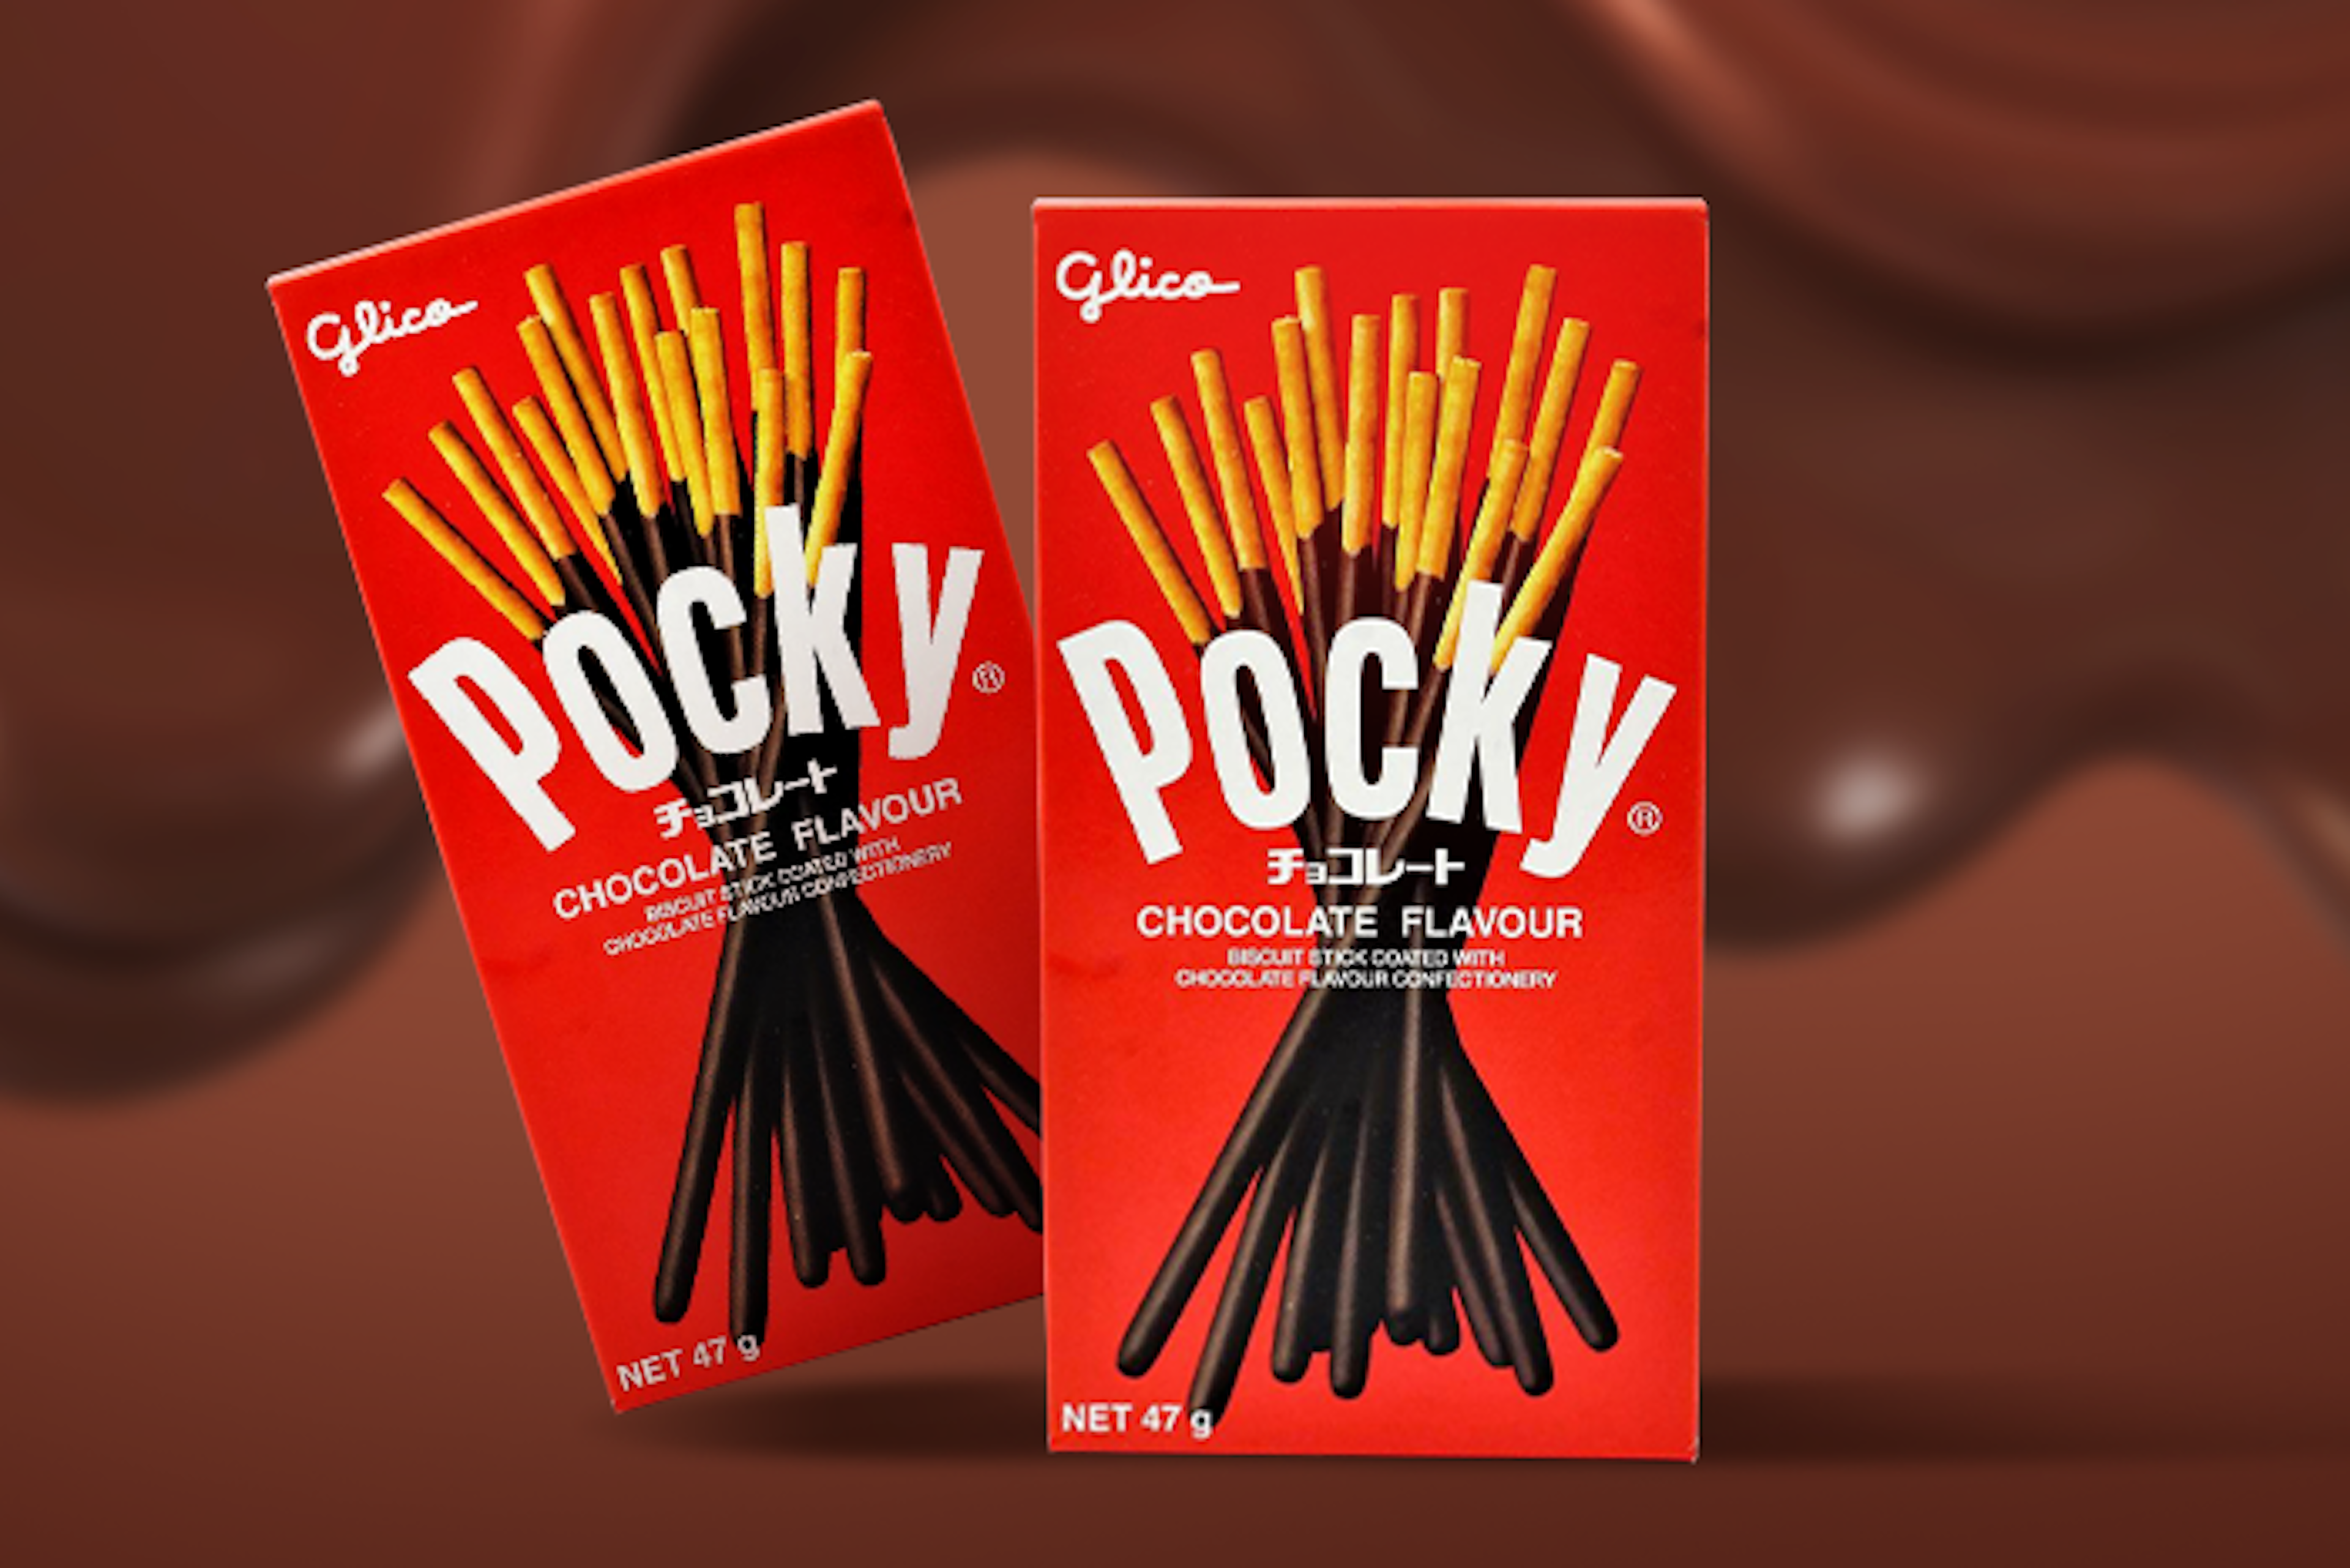 Einzelner-Glico-Pocky-Chocolate-Stick-auf-weißem-Hintergrund